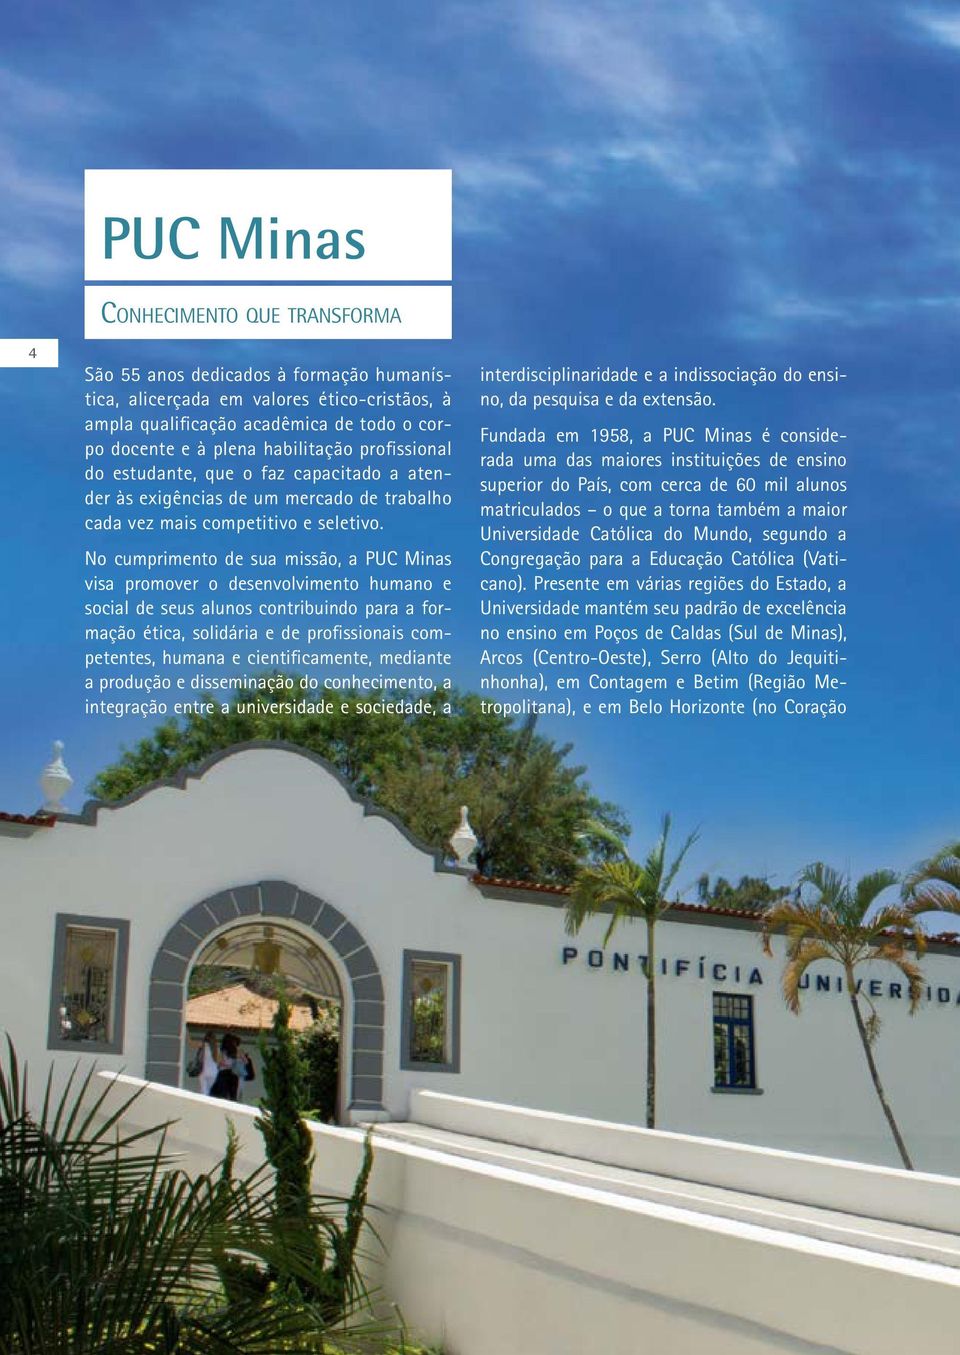 No cumprimento de sua missão, a PUC Minas visa promover o desenvolvimento humano e social de seus alunos contribuindo para a formação ética, solidária e de profissionais competentes, humana e